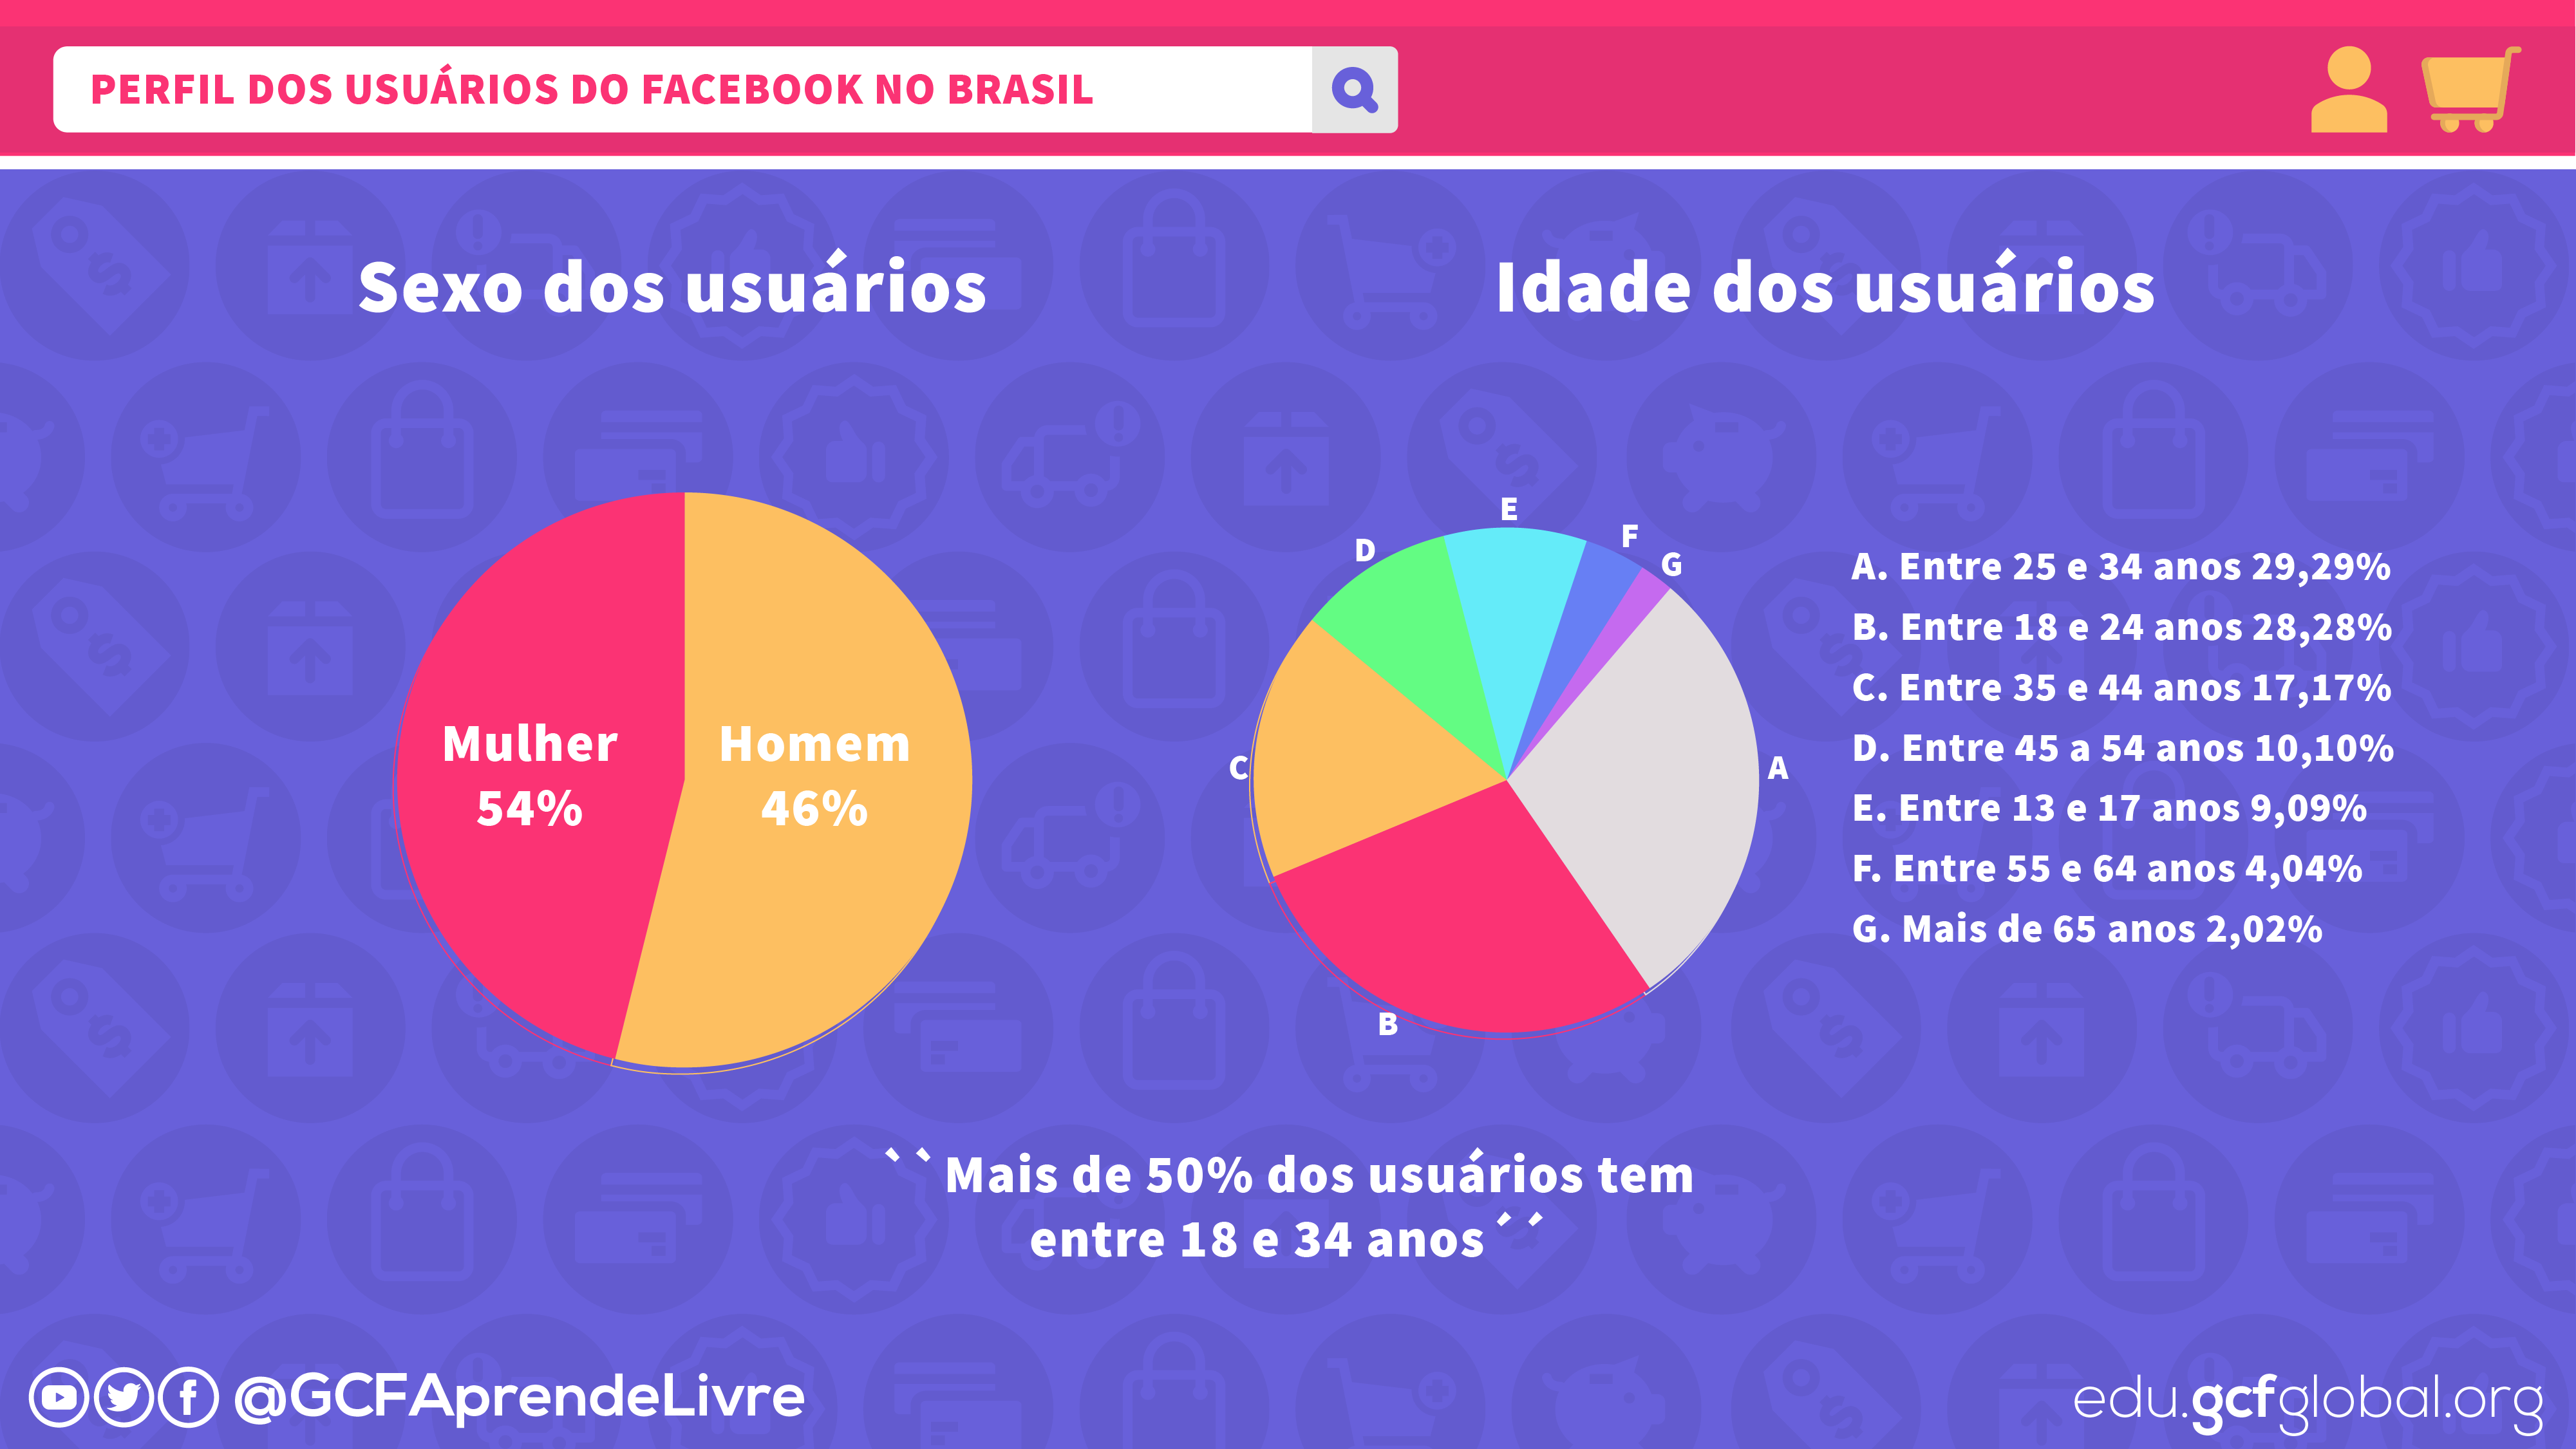 imagem1 perfil dos usuários do Facebook no Brasil